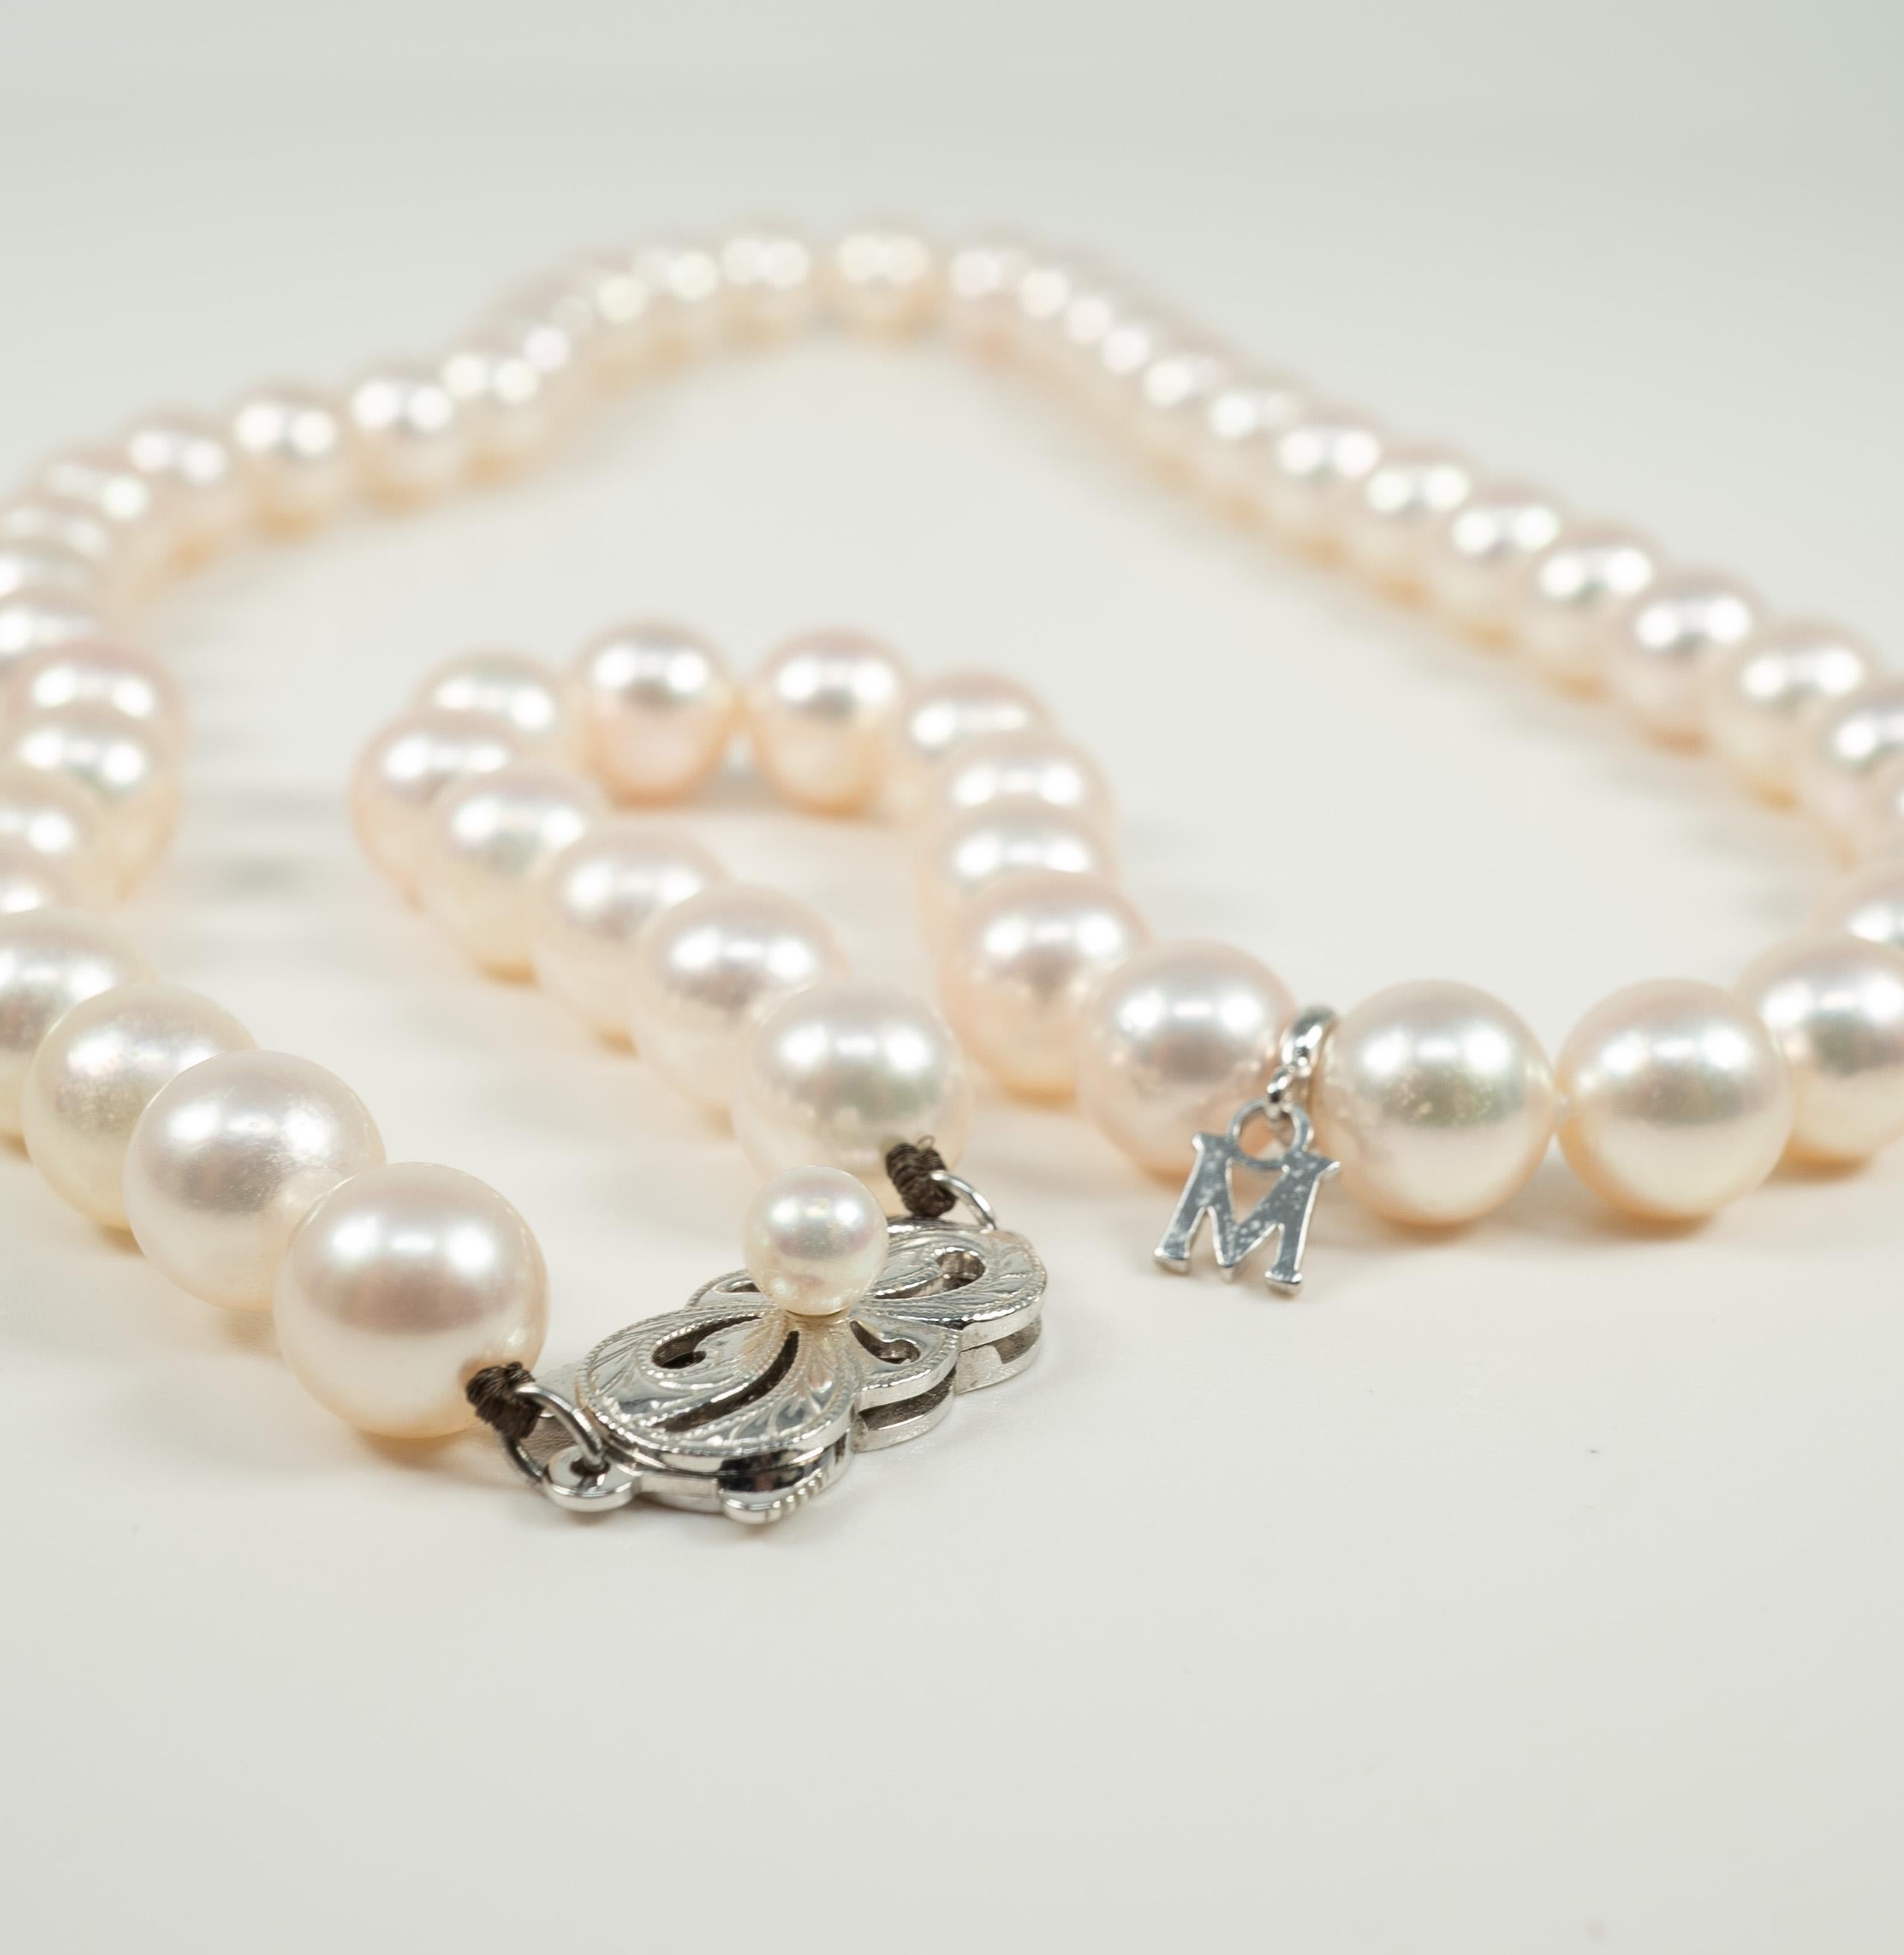 mikimoto pearl strand necklace 18